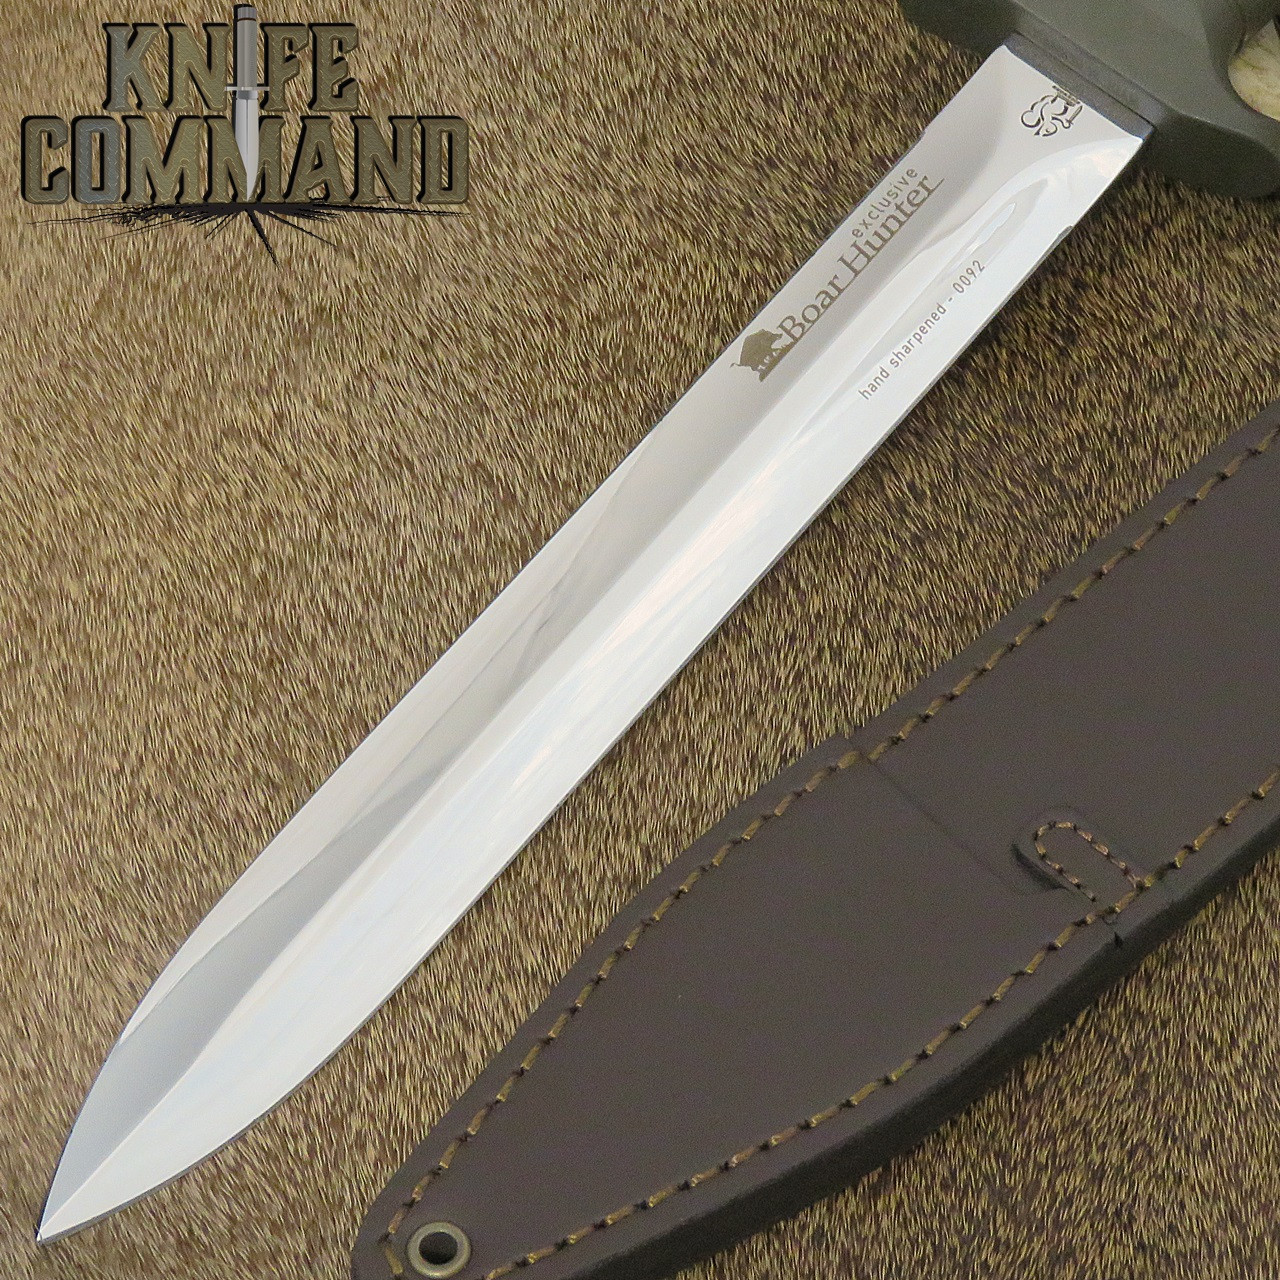 Eickhorn Solingen Boar Hunter Knife 825265 Exclusive Polished Blade Olive Green Handle